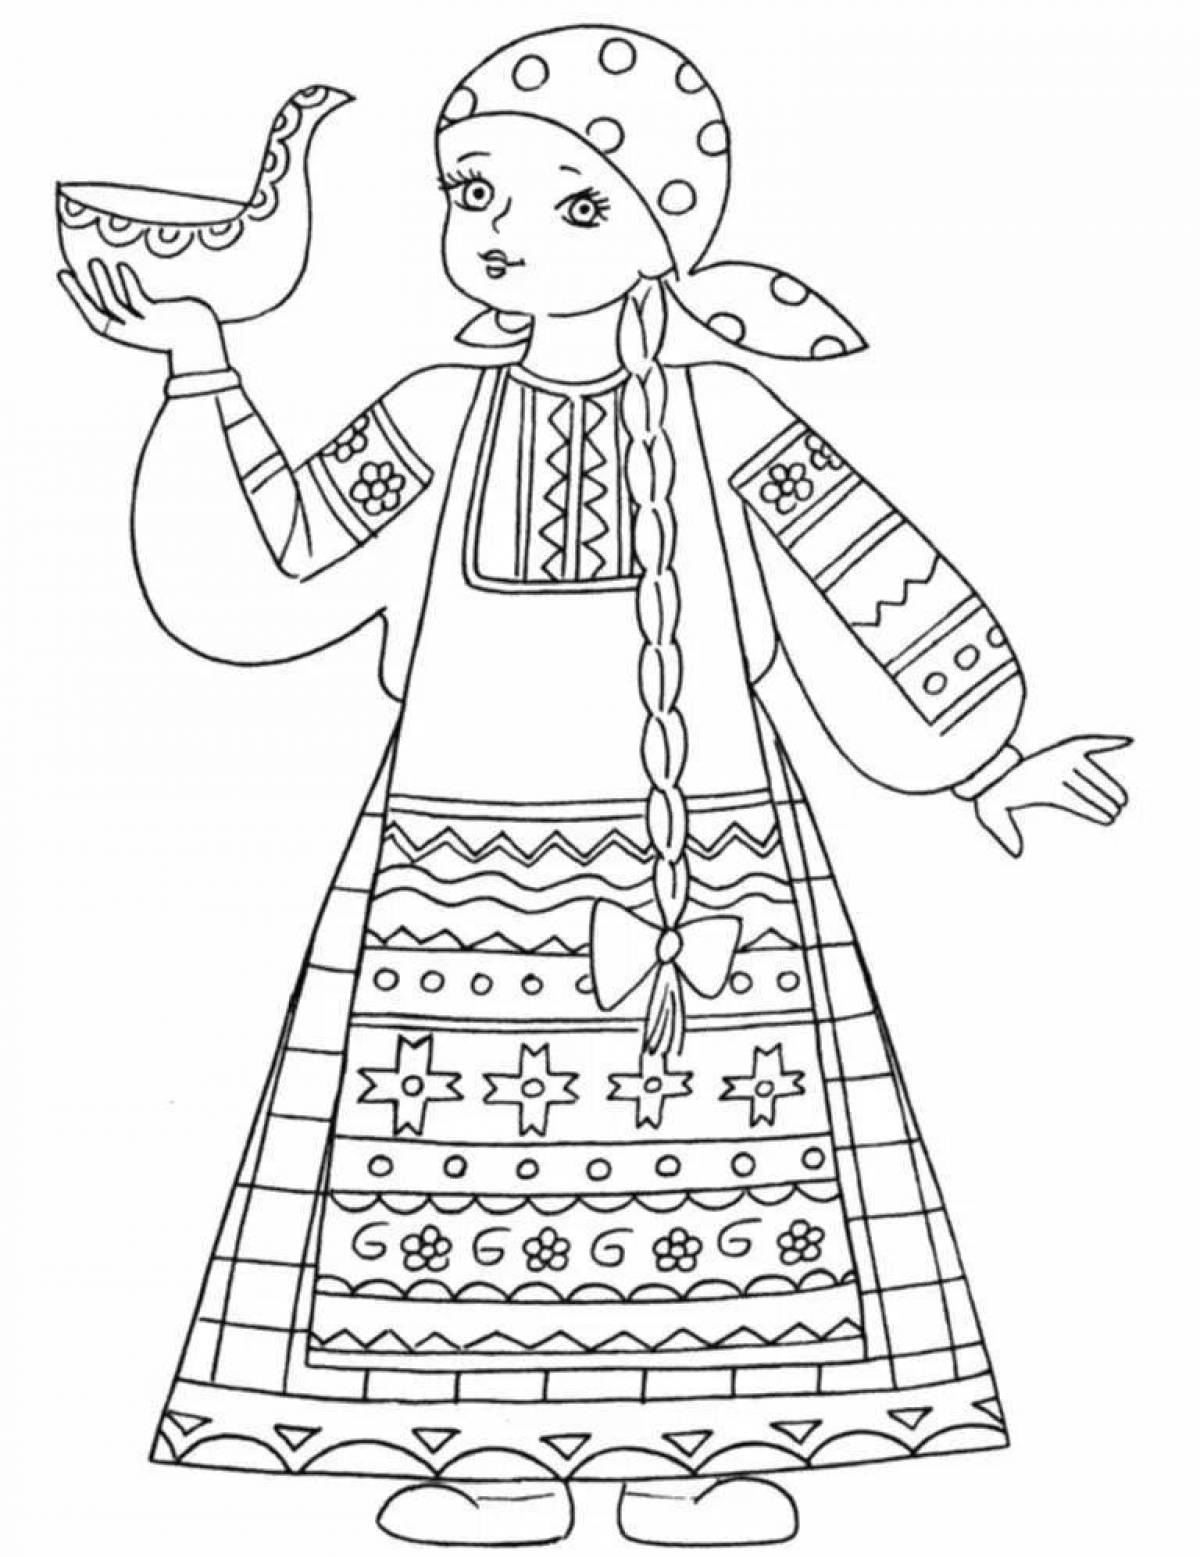 Страница раскраски с медведем и русской женщиной в традиционном народном костюме